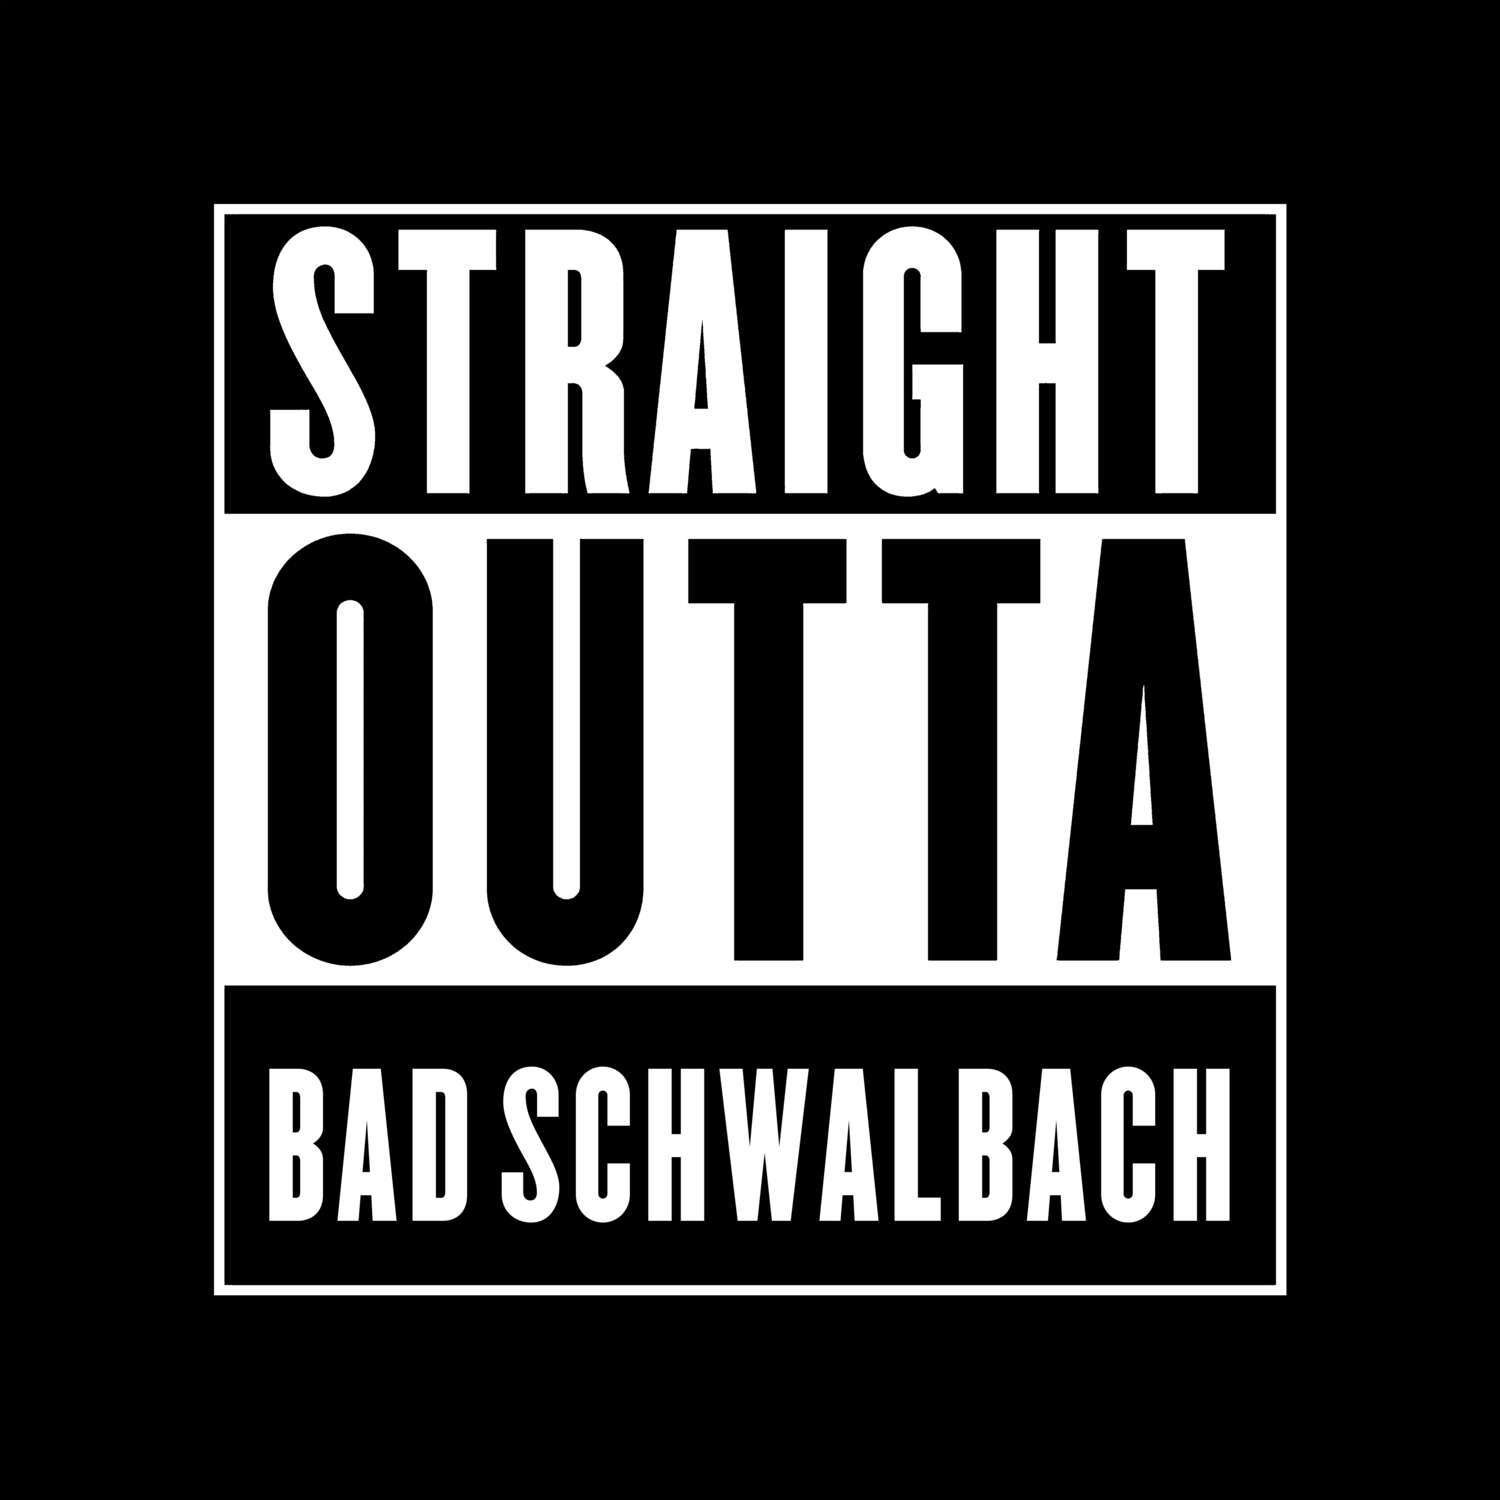 Bad Schwalbach T-Shirt »Straight Outta«